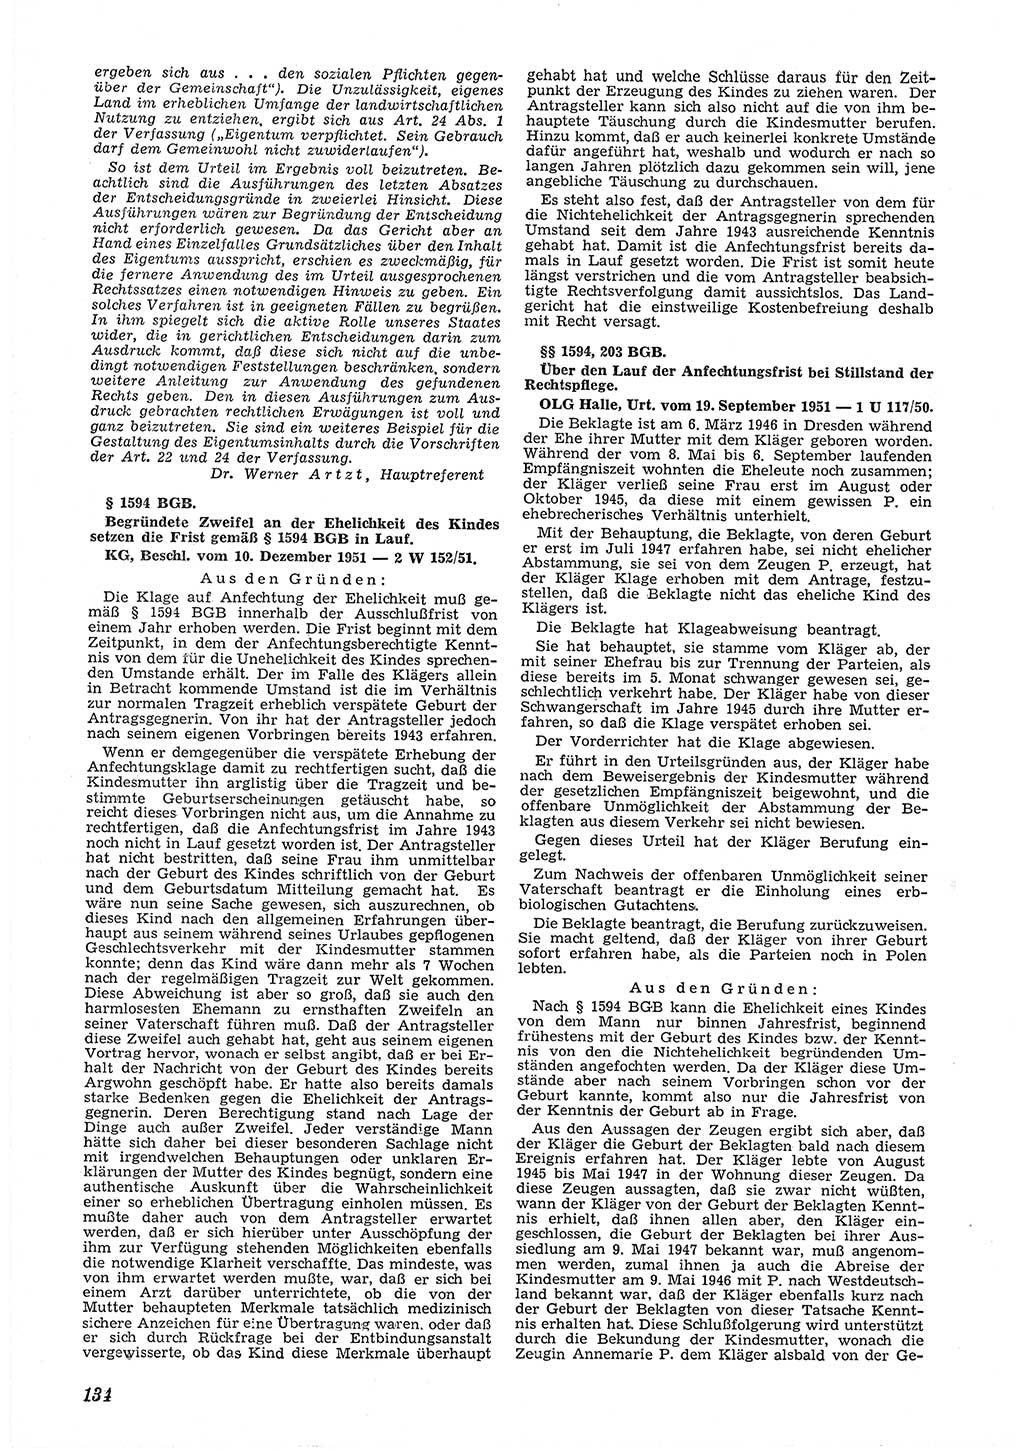 Neue Justiz (NJ), Zeitschrift für Recht und Rechtswissenschaft [Deutsche Demokratische Republik (DDR)], 6. Jahrgang 1952, Seite 134 (NJ DDR 1952, S. 134)